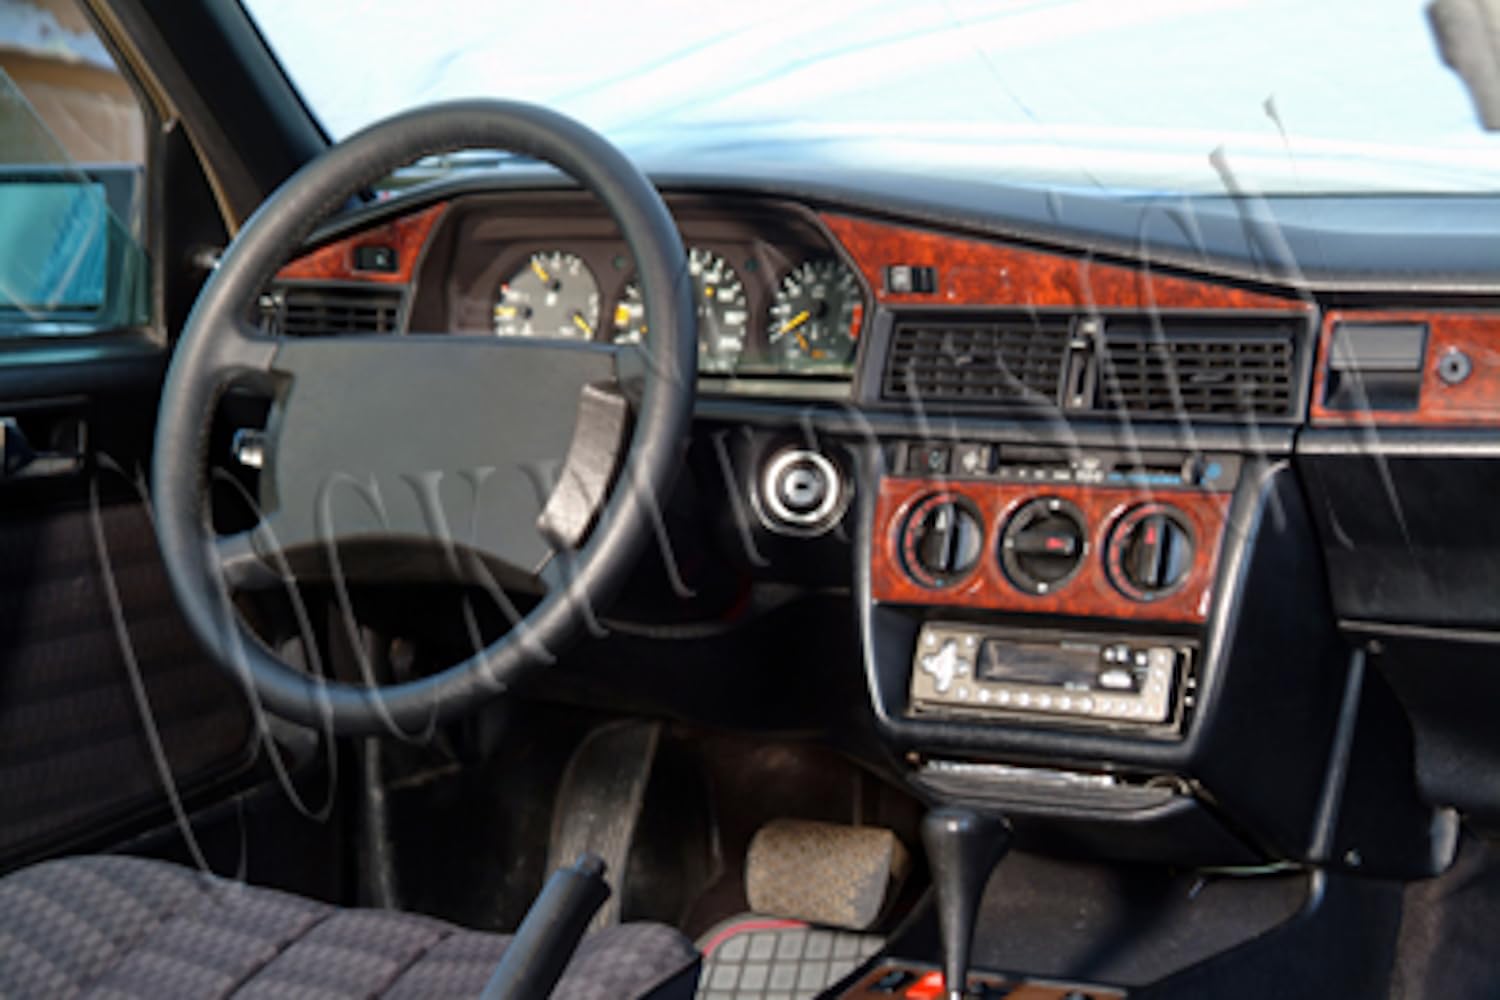 AUTOKLEIDUNG® Cockpit Dekor kompatibel mit Mercedes 190 (W201) Baujahr 12/1983-05/1993 11 Teile | 3D Wurzelholz Optik von Autokleidung